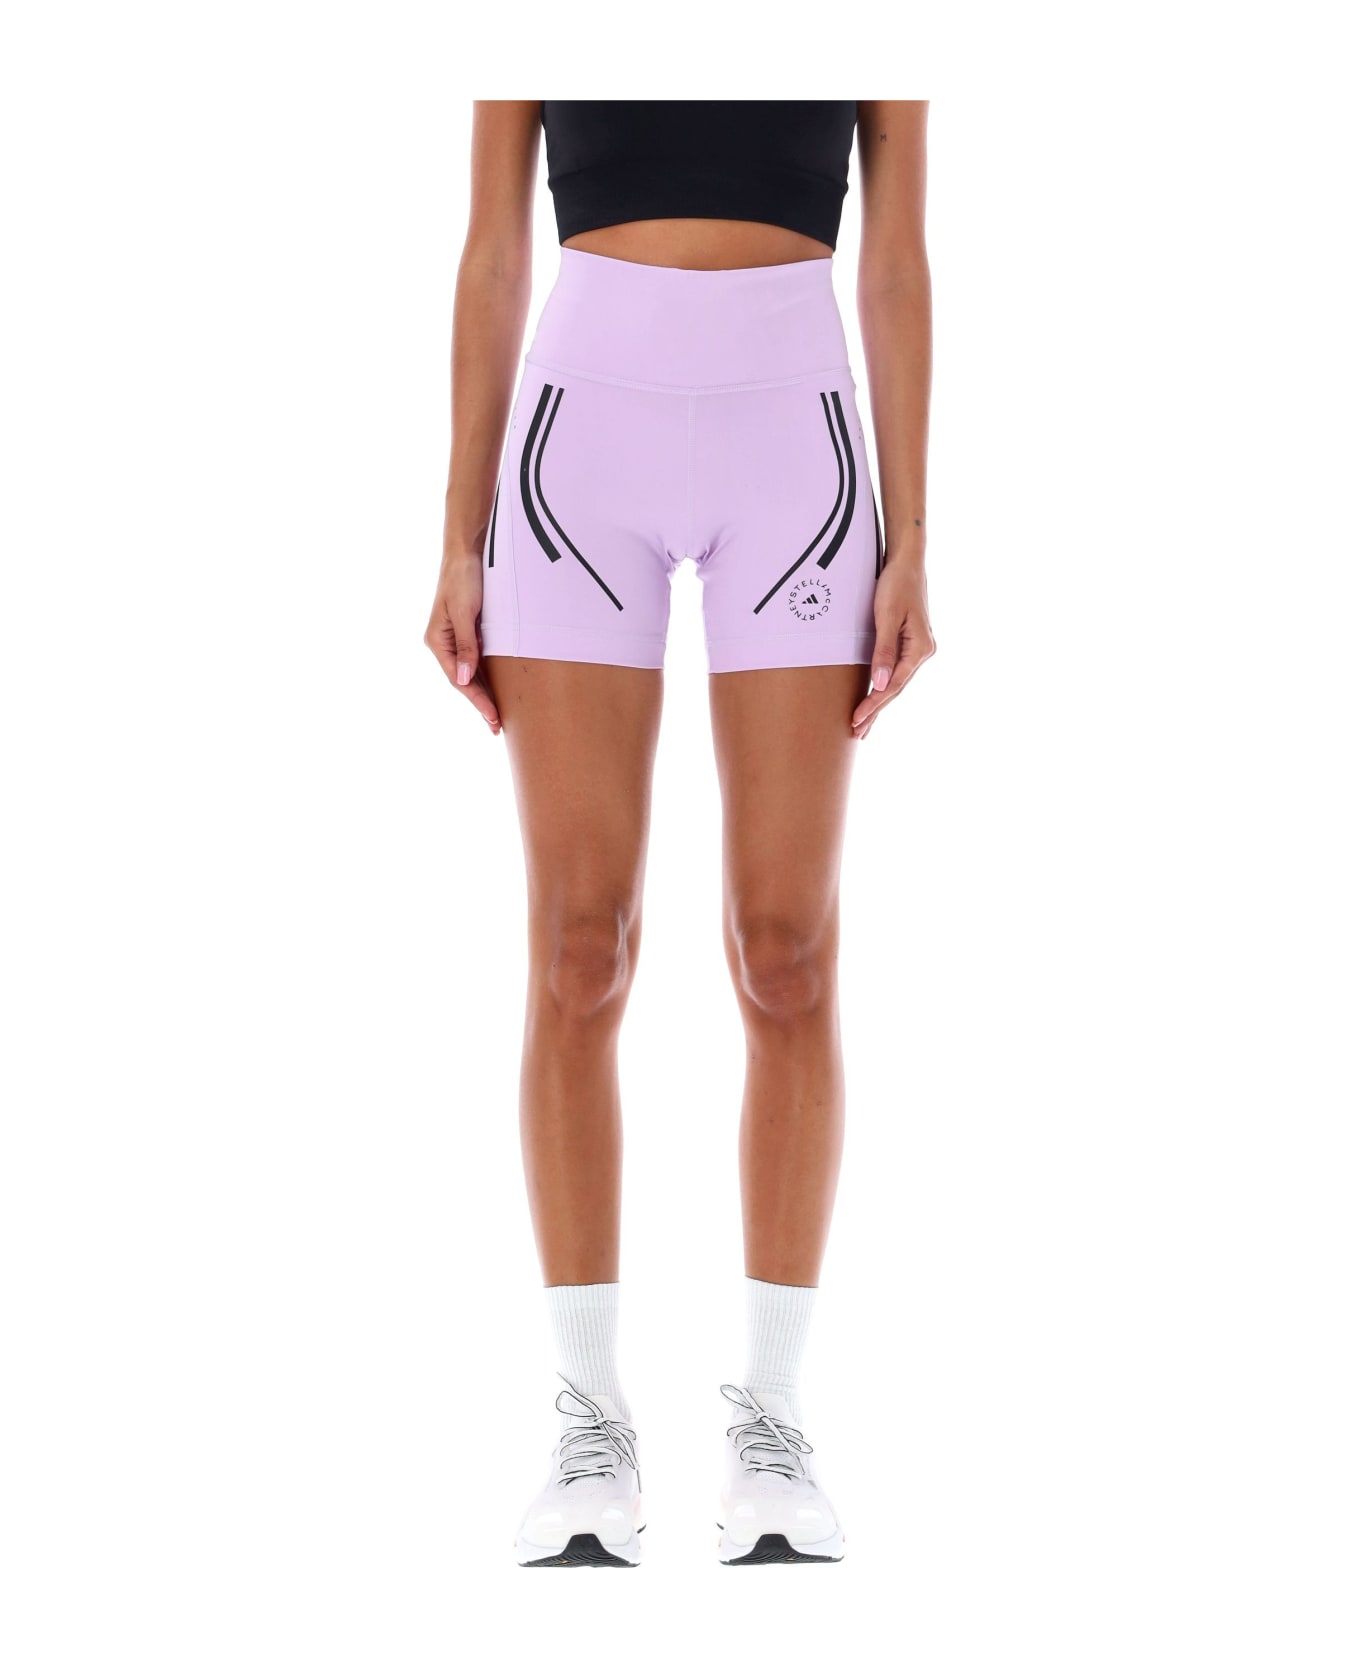 Adidas by Stella McCartney Truepace High-waisted Cycling Shorts - PURPLE GLOW